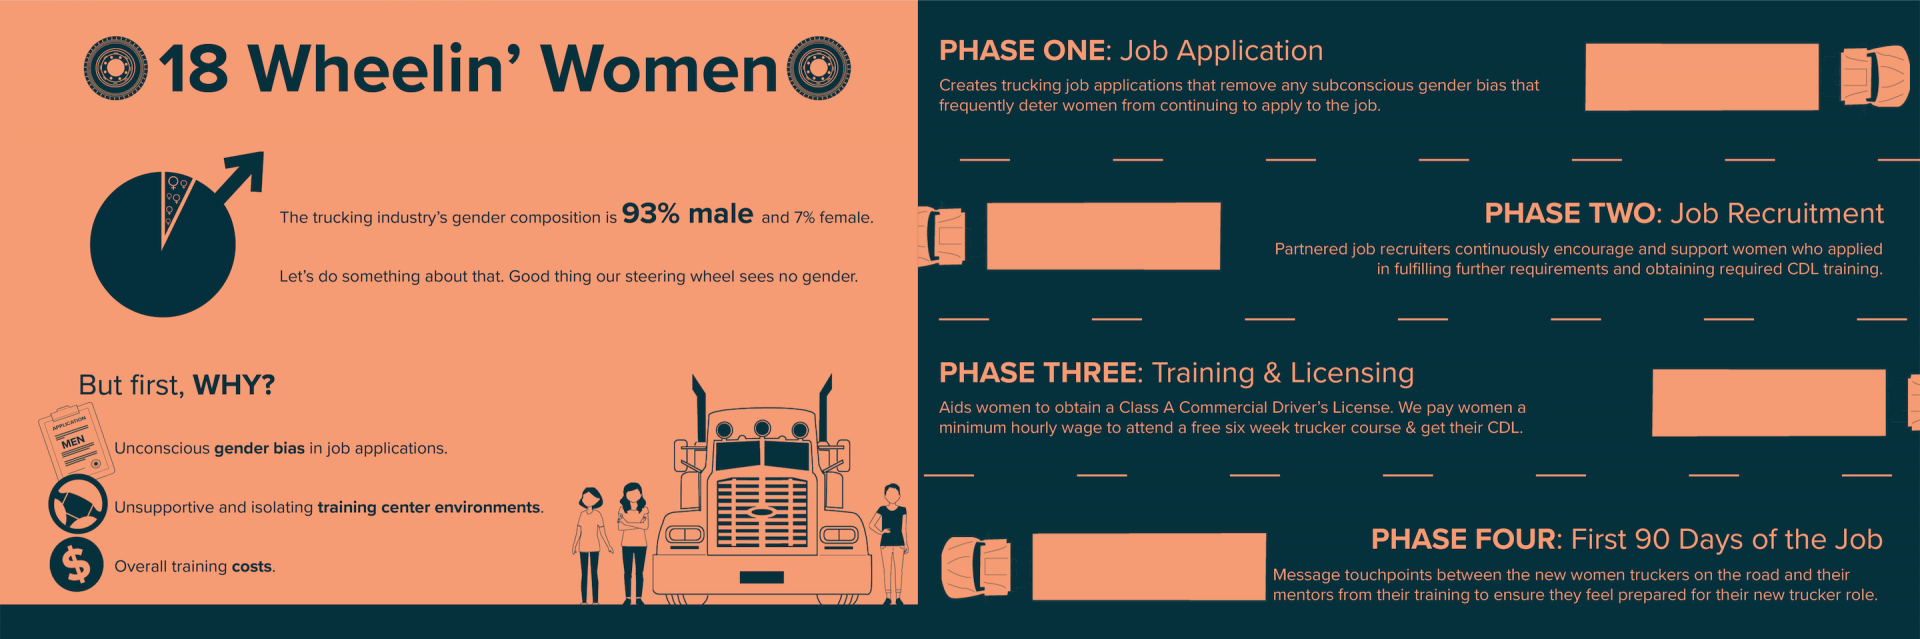 An infographic describing research data and 18 Wheelin' Women process